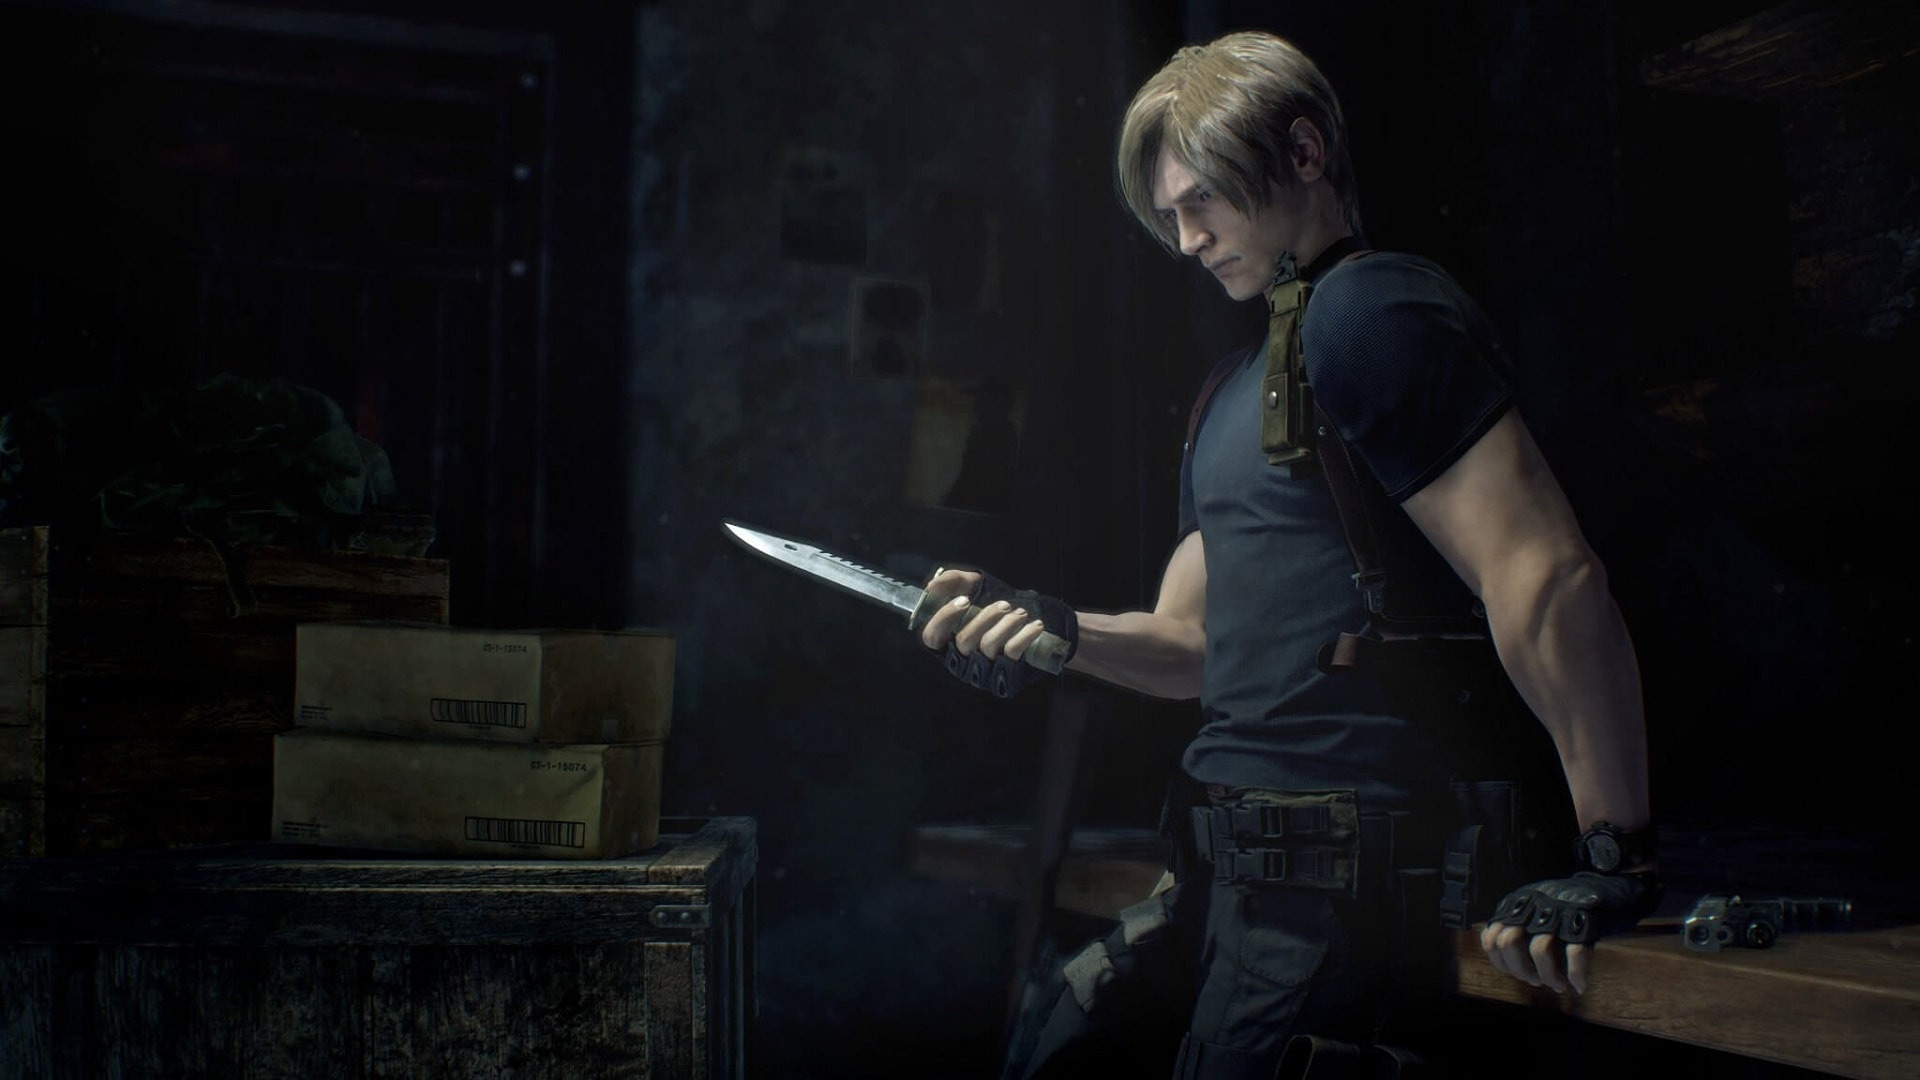 ATUALIZADO] Resident Evil 4 Remake surge em suposta lista vazada de serviço  online da NVIDIA para PCs! - EvilHazard